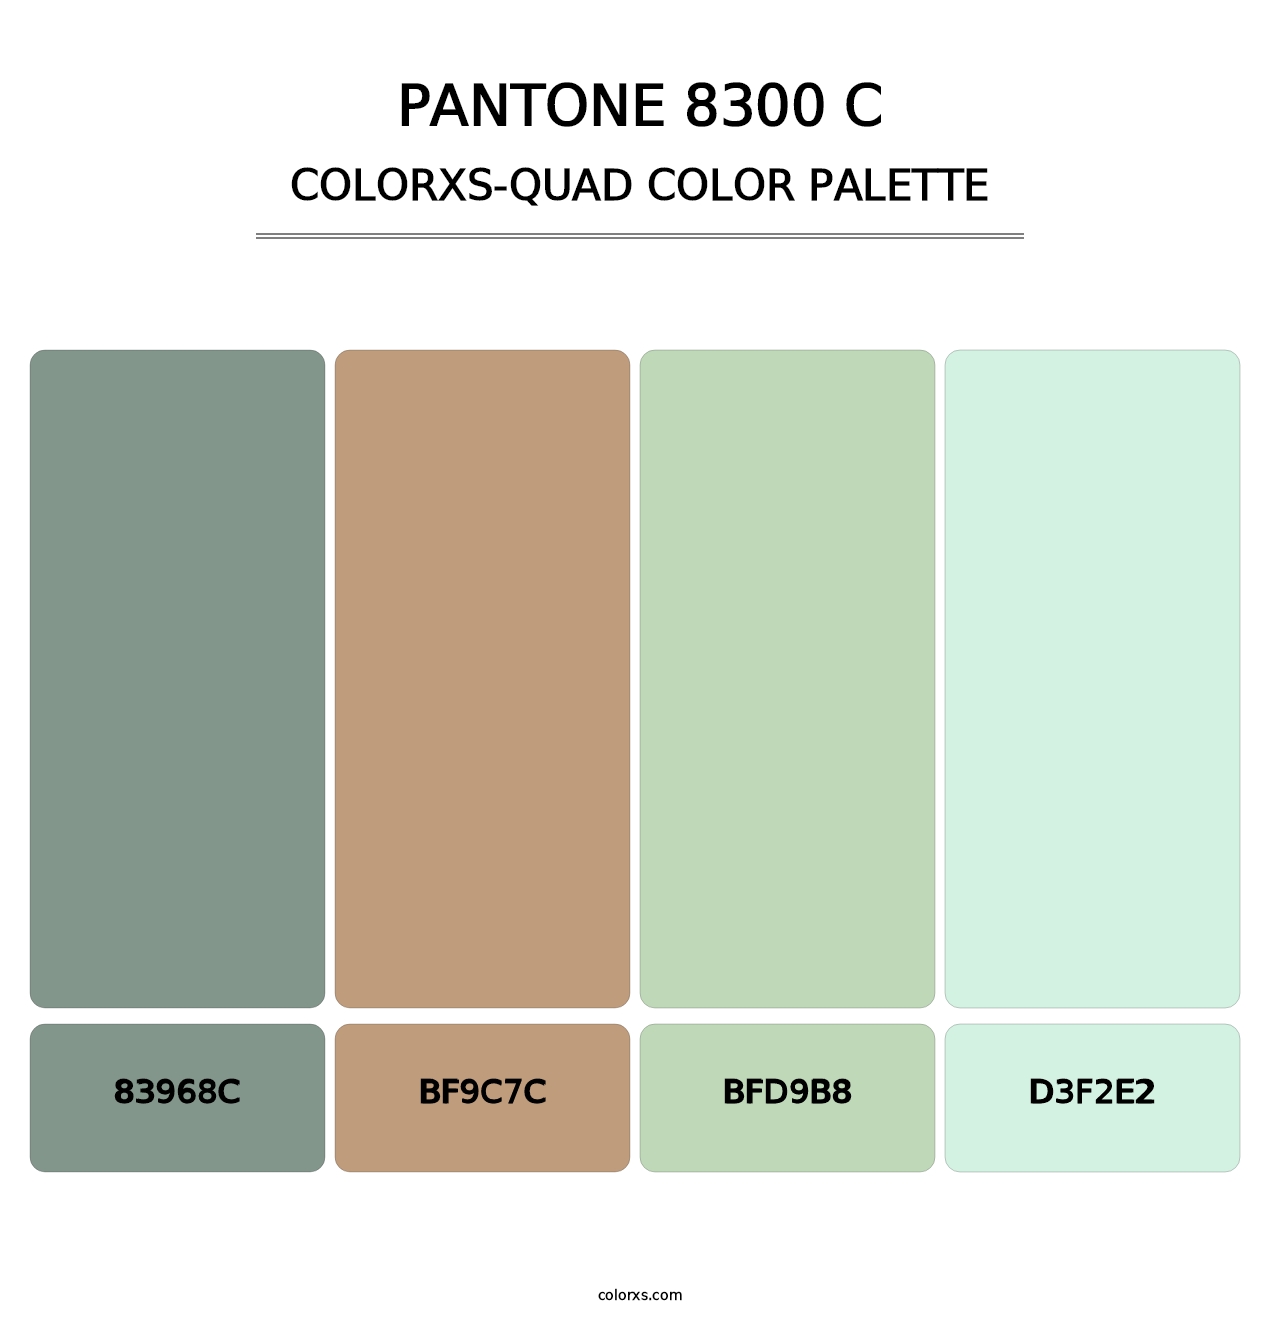 PANTONE 8300 C - Colorxs Quad Palette